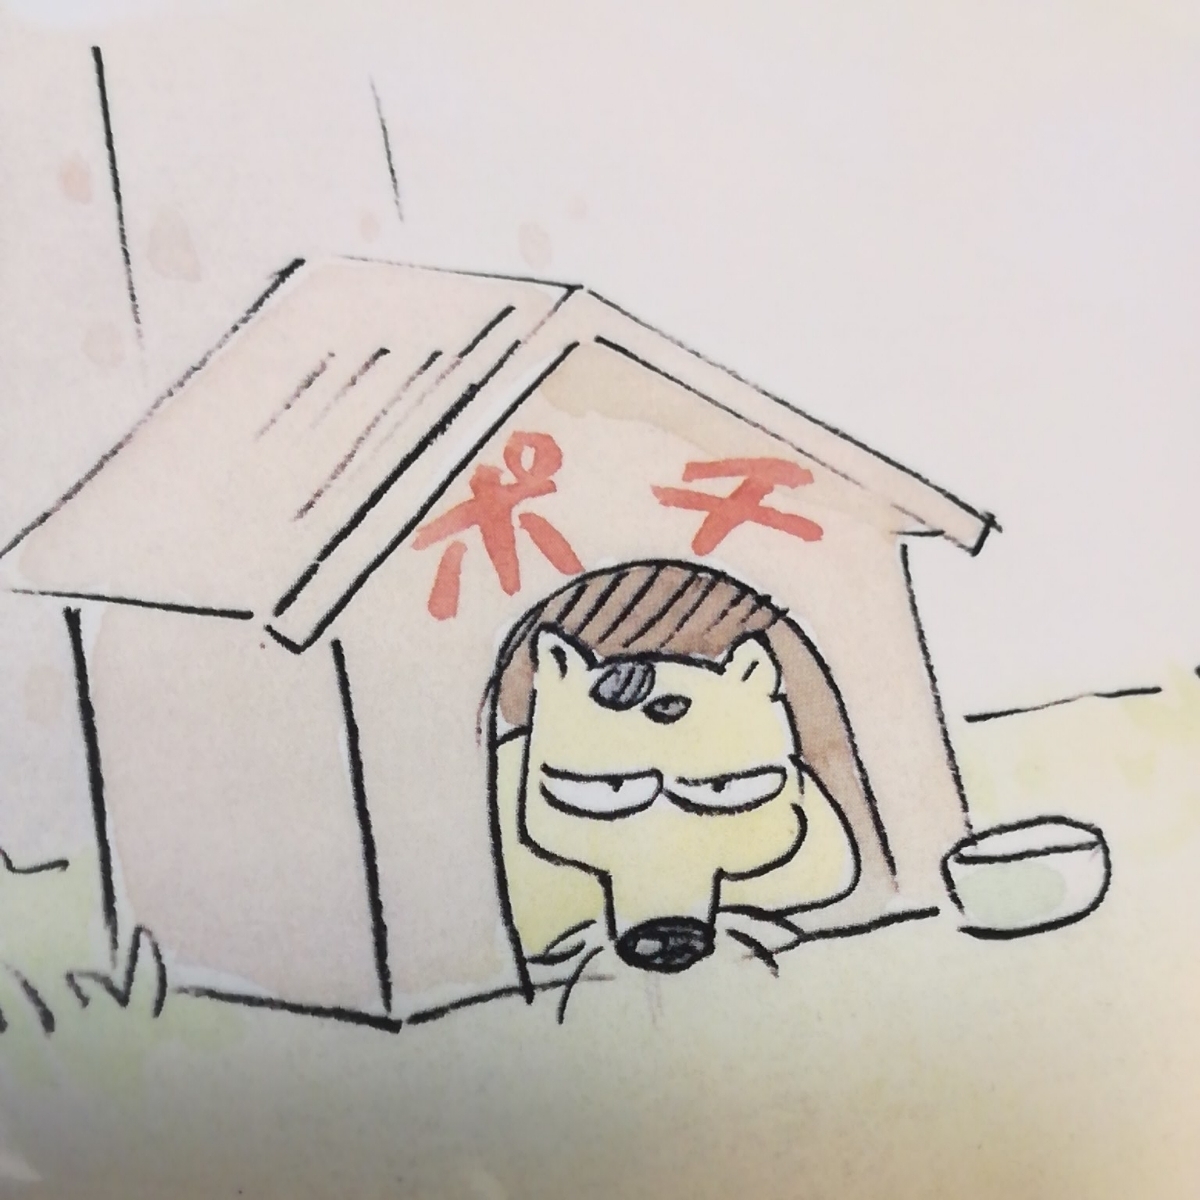 Wird in einer Schutztasche geliefert. [Originalartikel] Mein Nachbar Yamada-kun Studio Ghibli Original-Kunstausstellung [Limitiert] Postkarte.Layout-Ausstellung.Originalzeichnungen.Cel-Zeichnungen.Sammler.Viel Ghibli., Comics, Anime-Waren, handgezeichnete Illustration